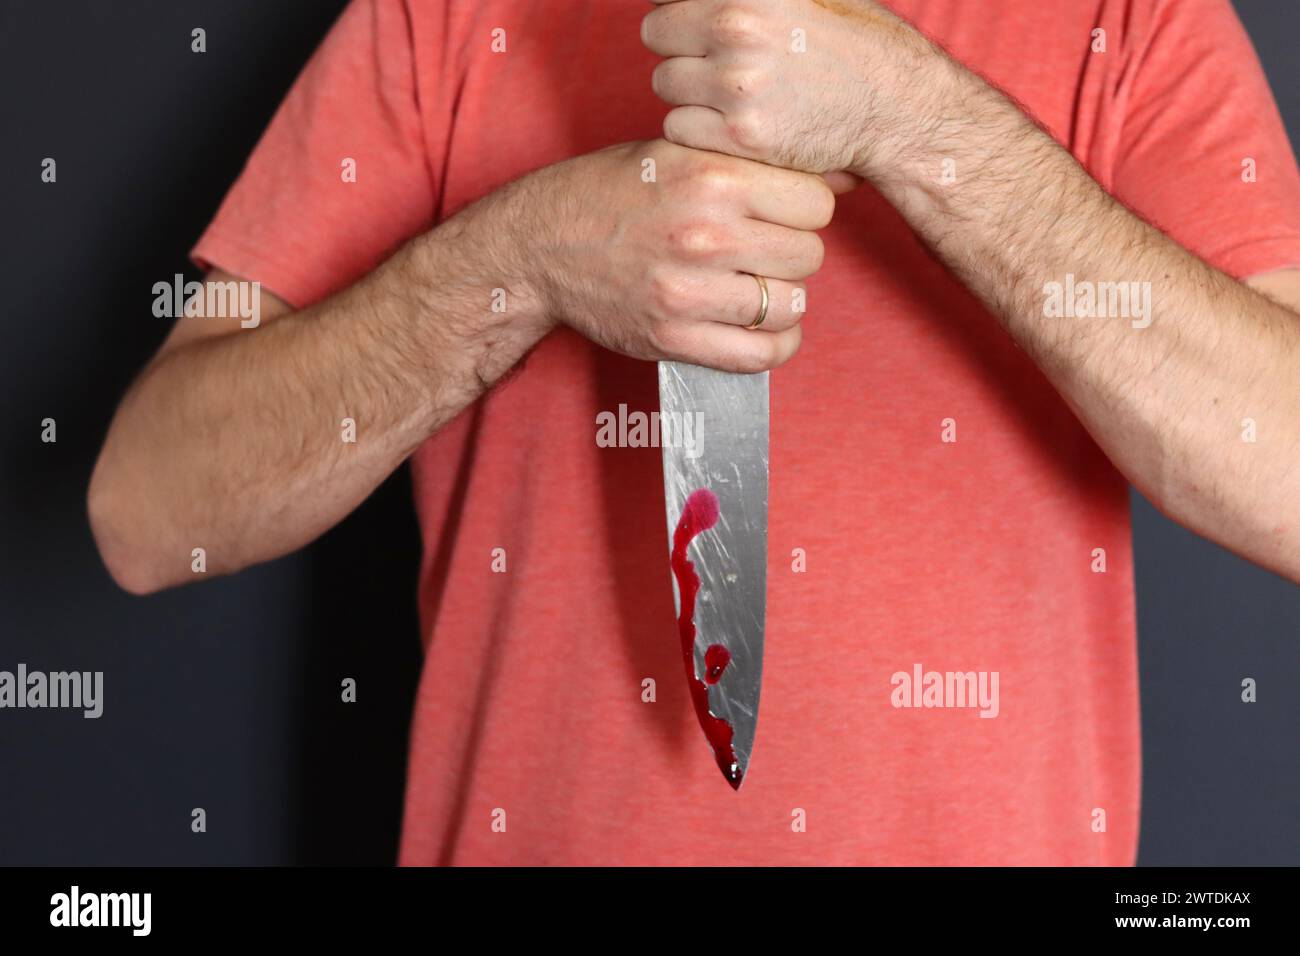 Homme tenant couteau avec du sang sur fond sombre, gros plan. Concept de violence domestique Banque D'Images